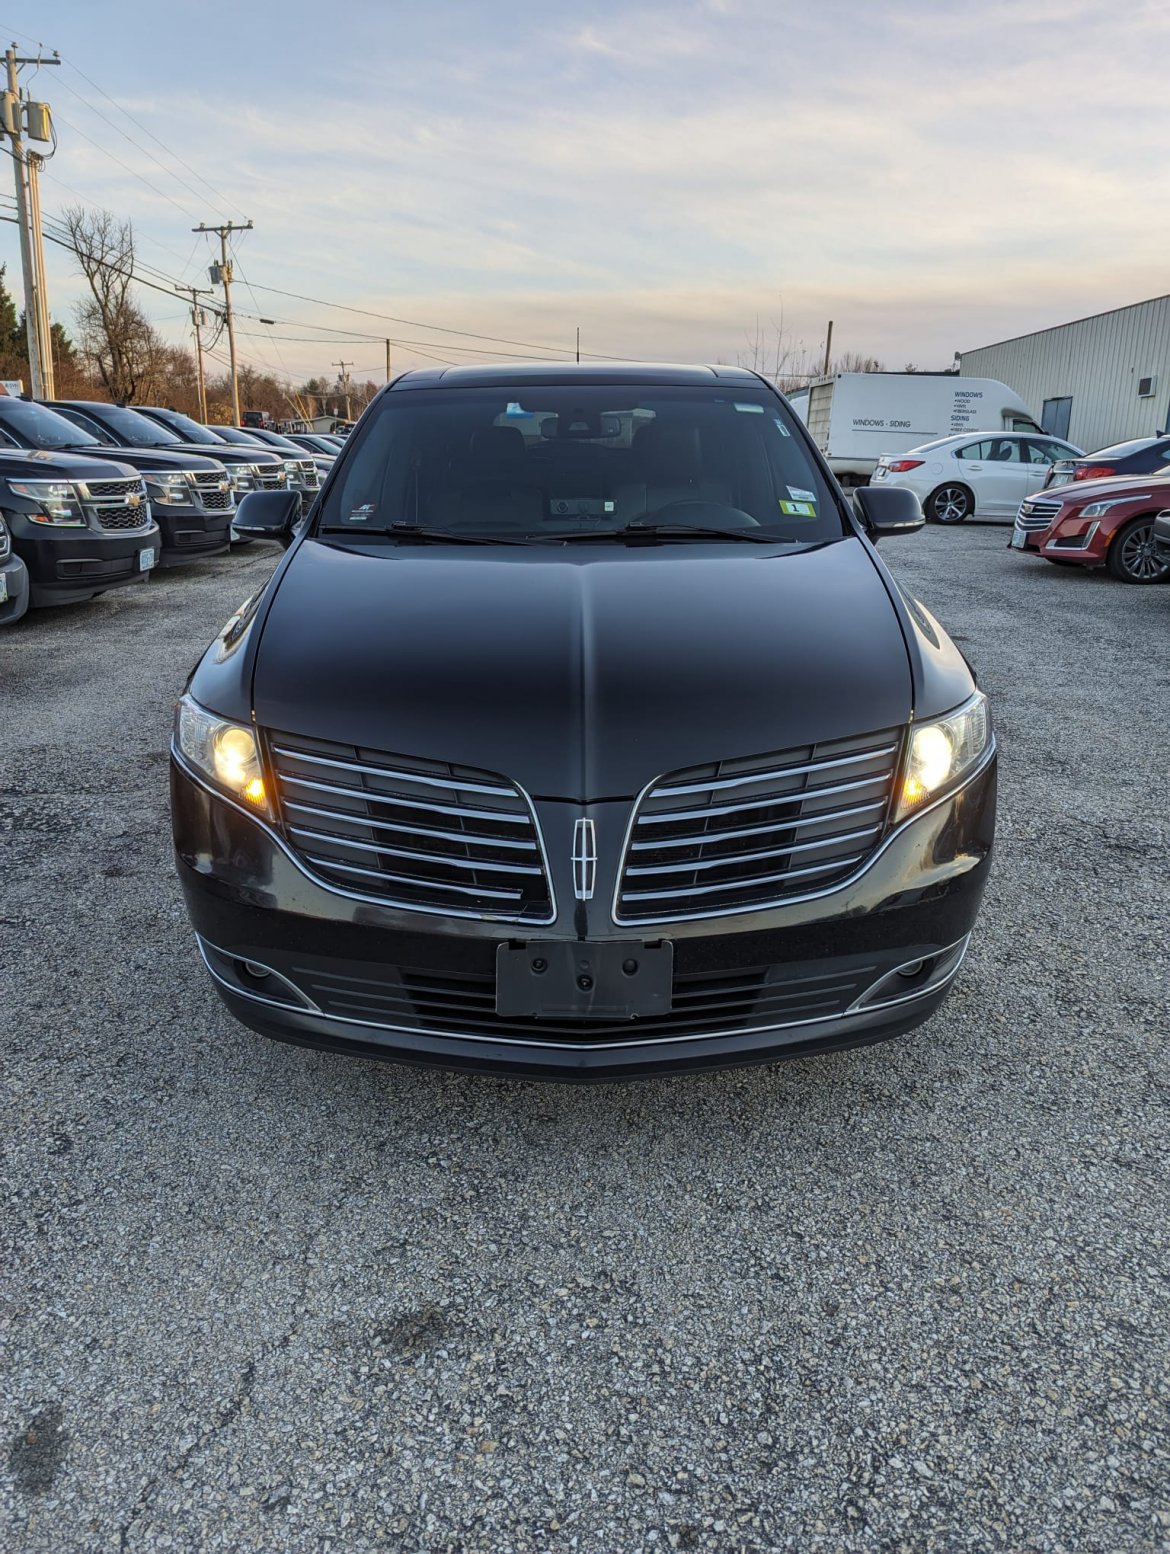 Sedan for sale: 2019 Lincoln MKT